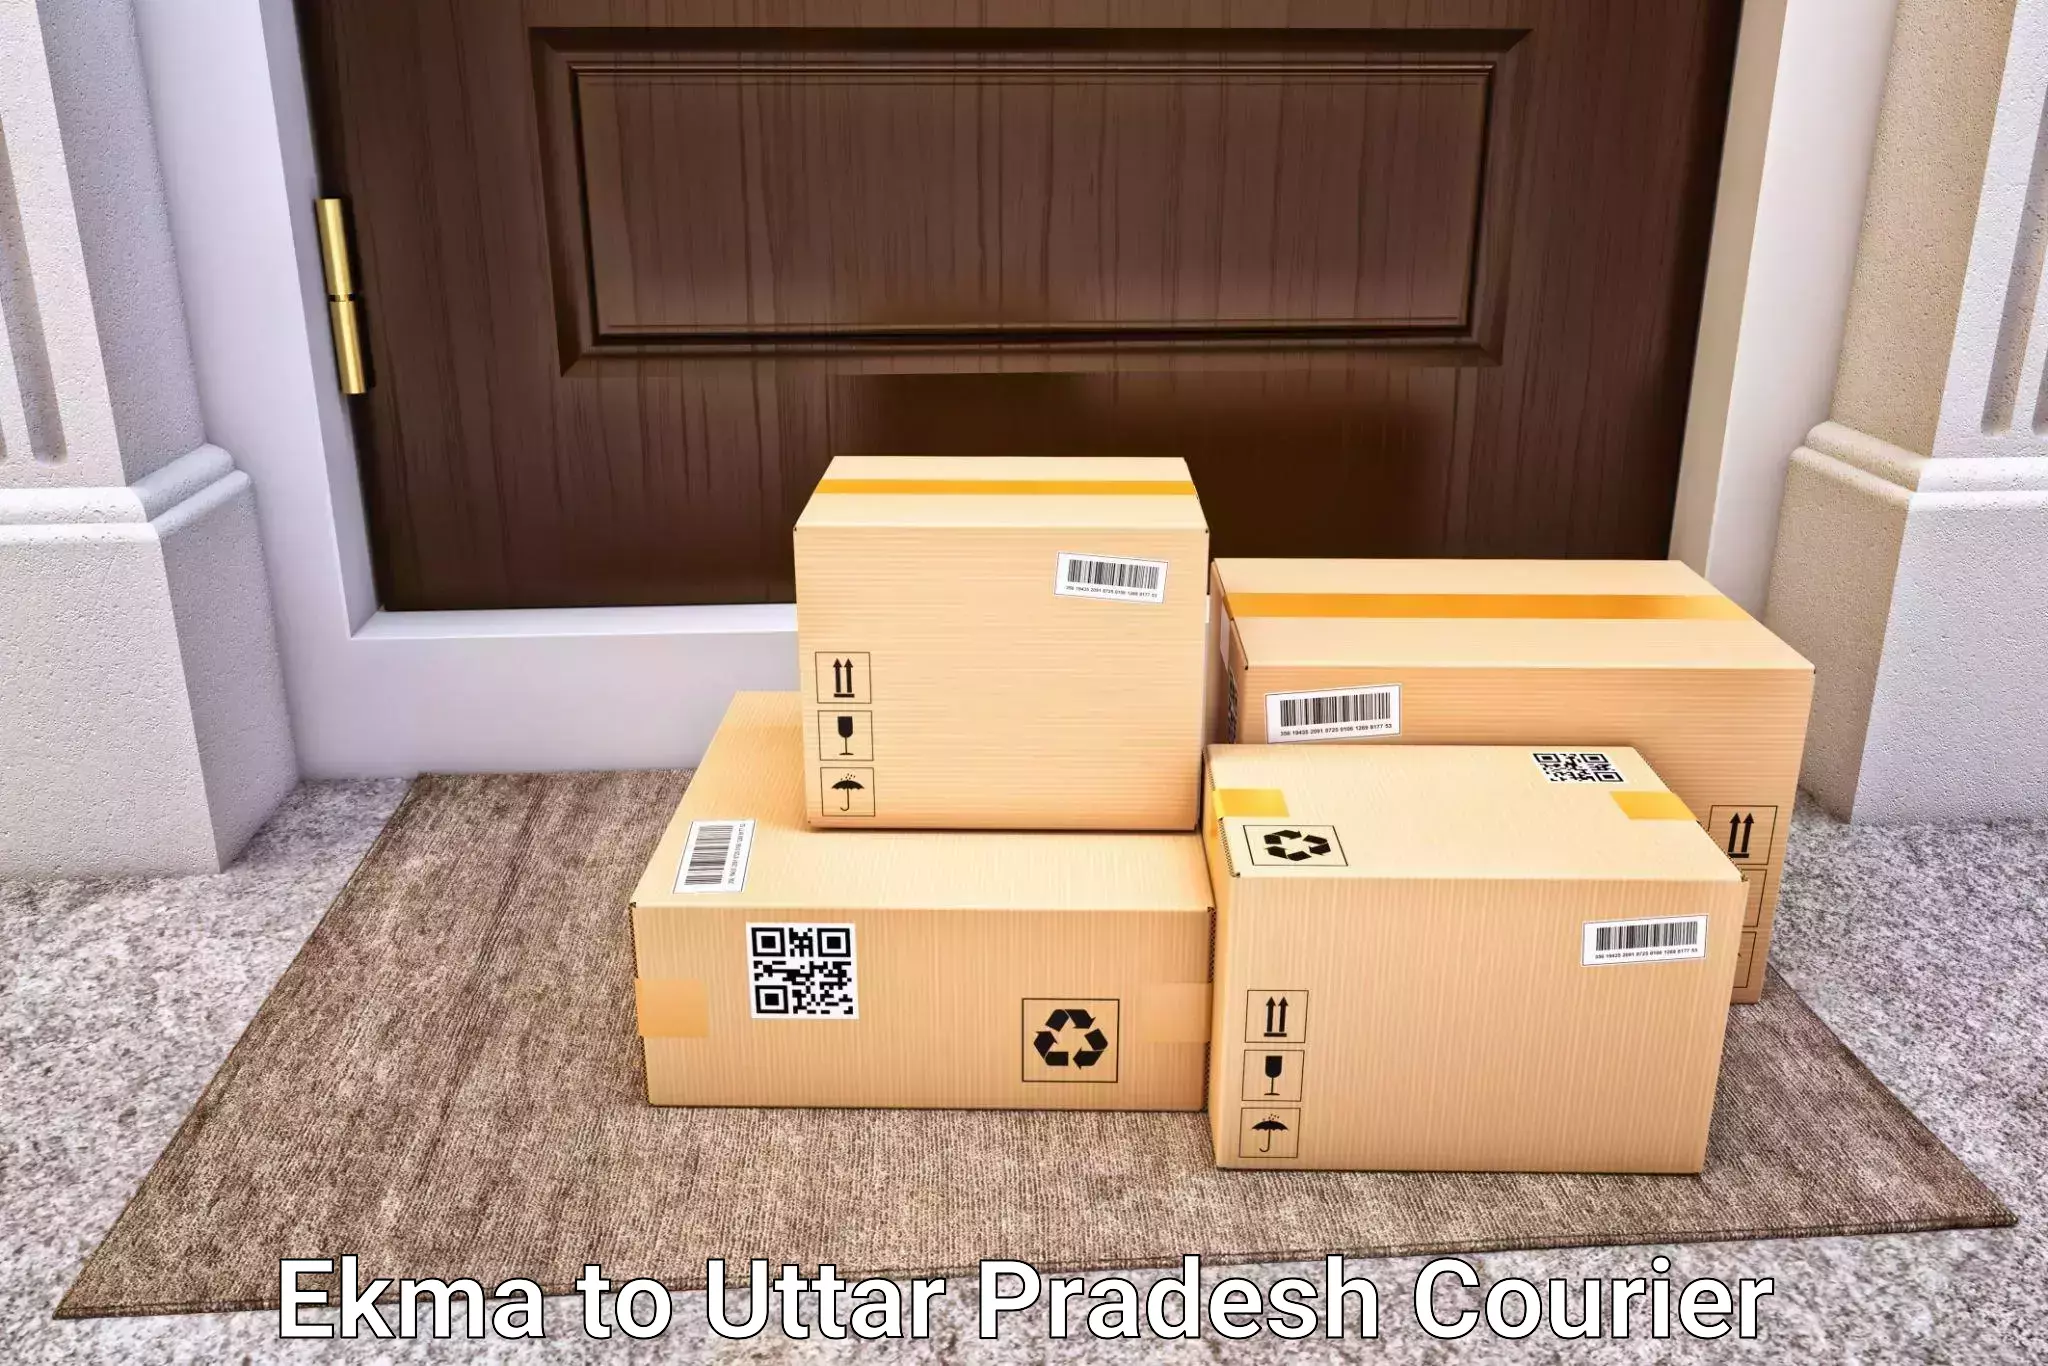 Luggage shipment specialists Ekma to Kulpahar